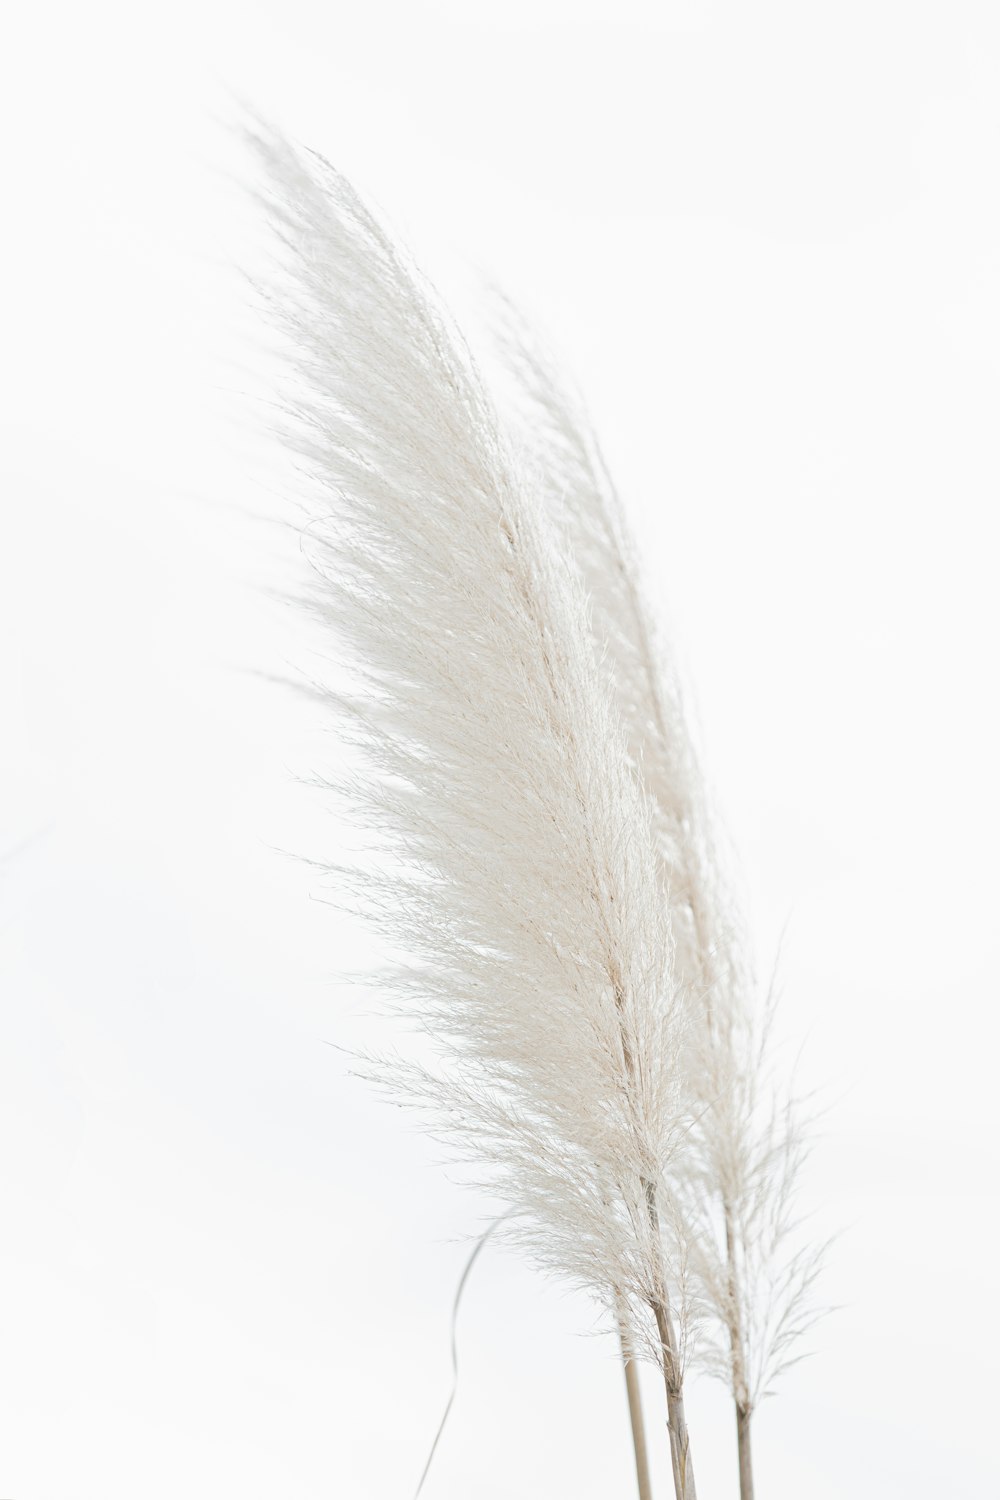 pluma blanca sobre fondo blanco